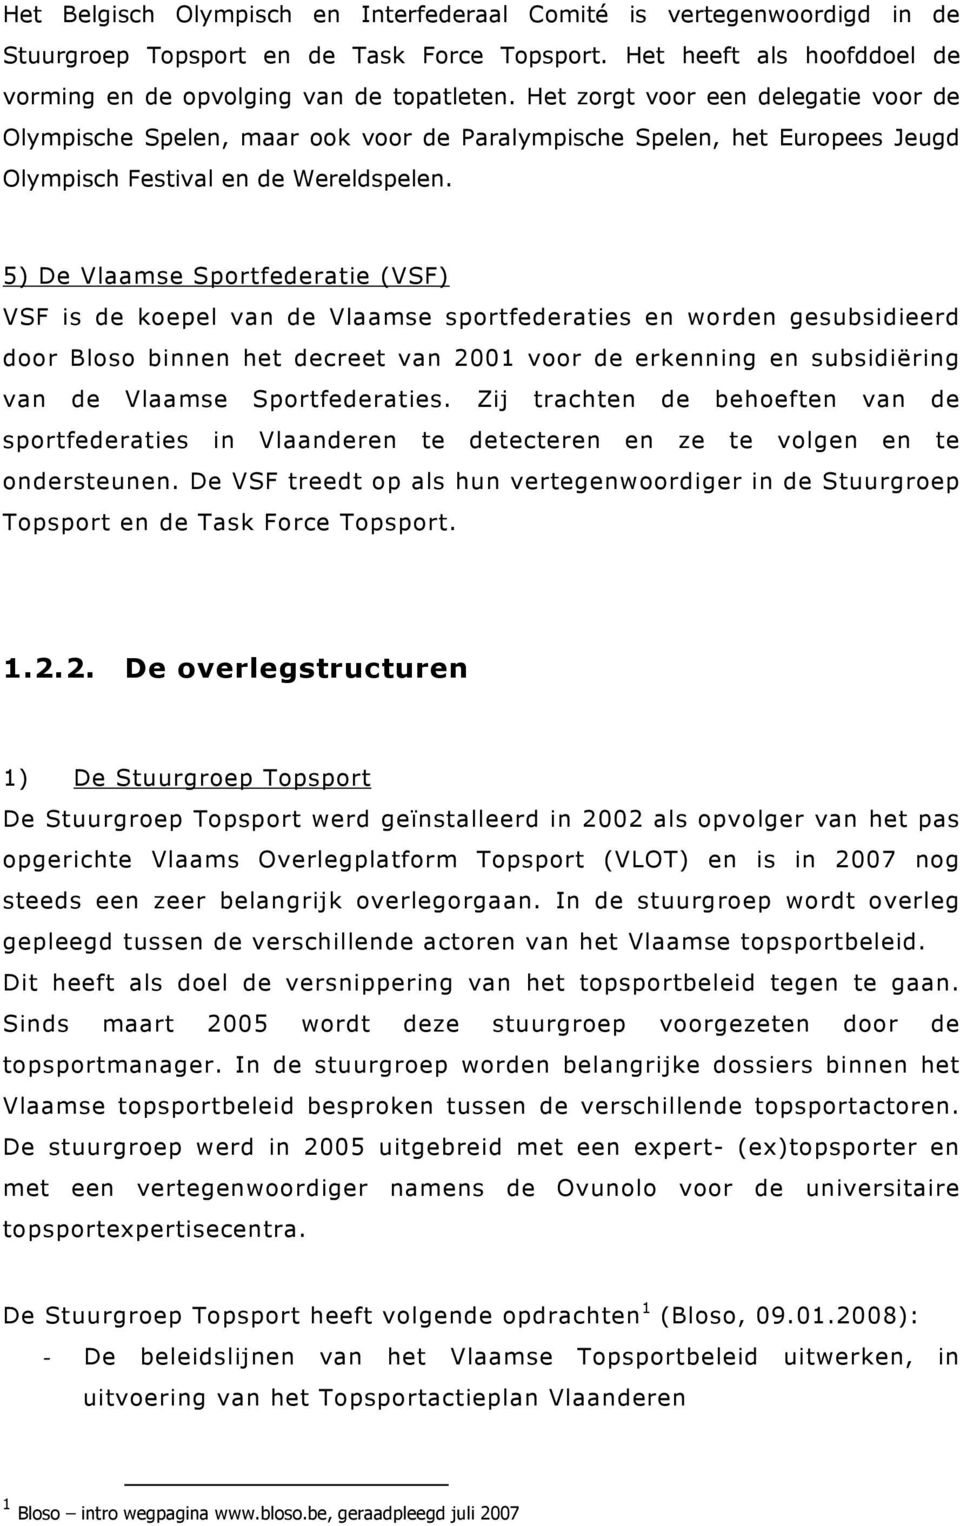 5) De Vlaamse Sportfederatie (VSF) VSF is de koepel van de Vlaamse sportfederaties en worden gesubsidieerd door Bloso binnen het decreet van 2001 voor de erkenning en subsidiëring van de Vlaamse